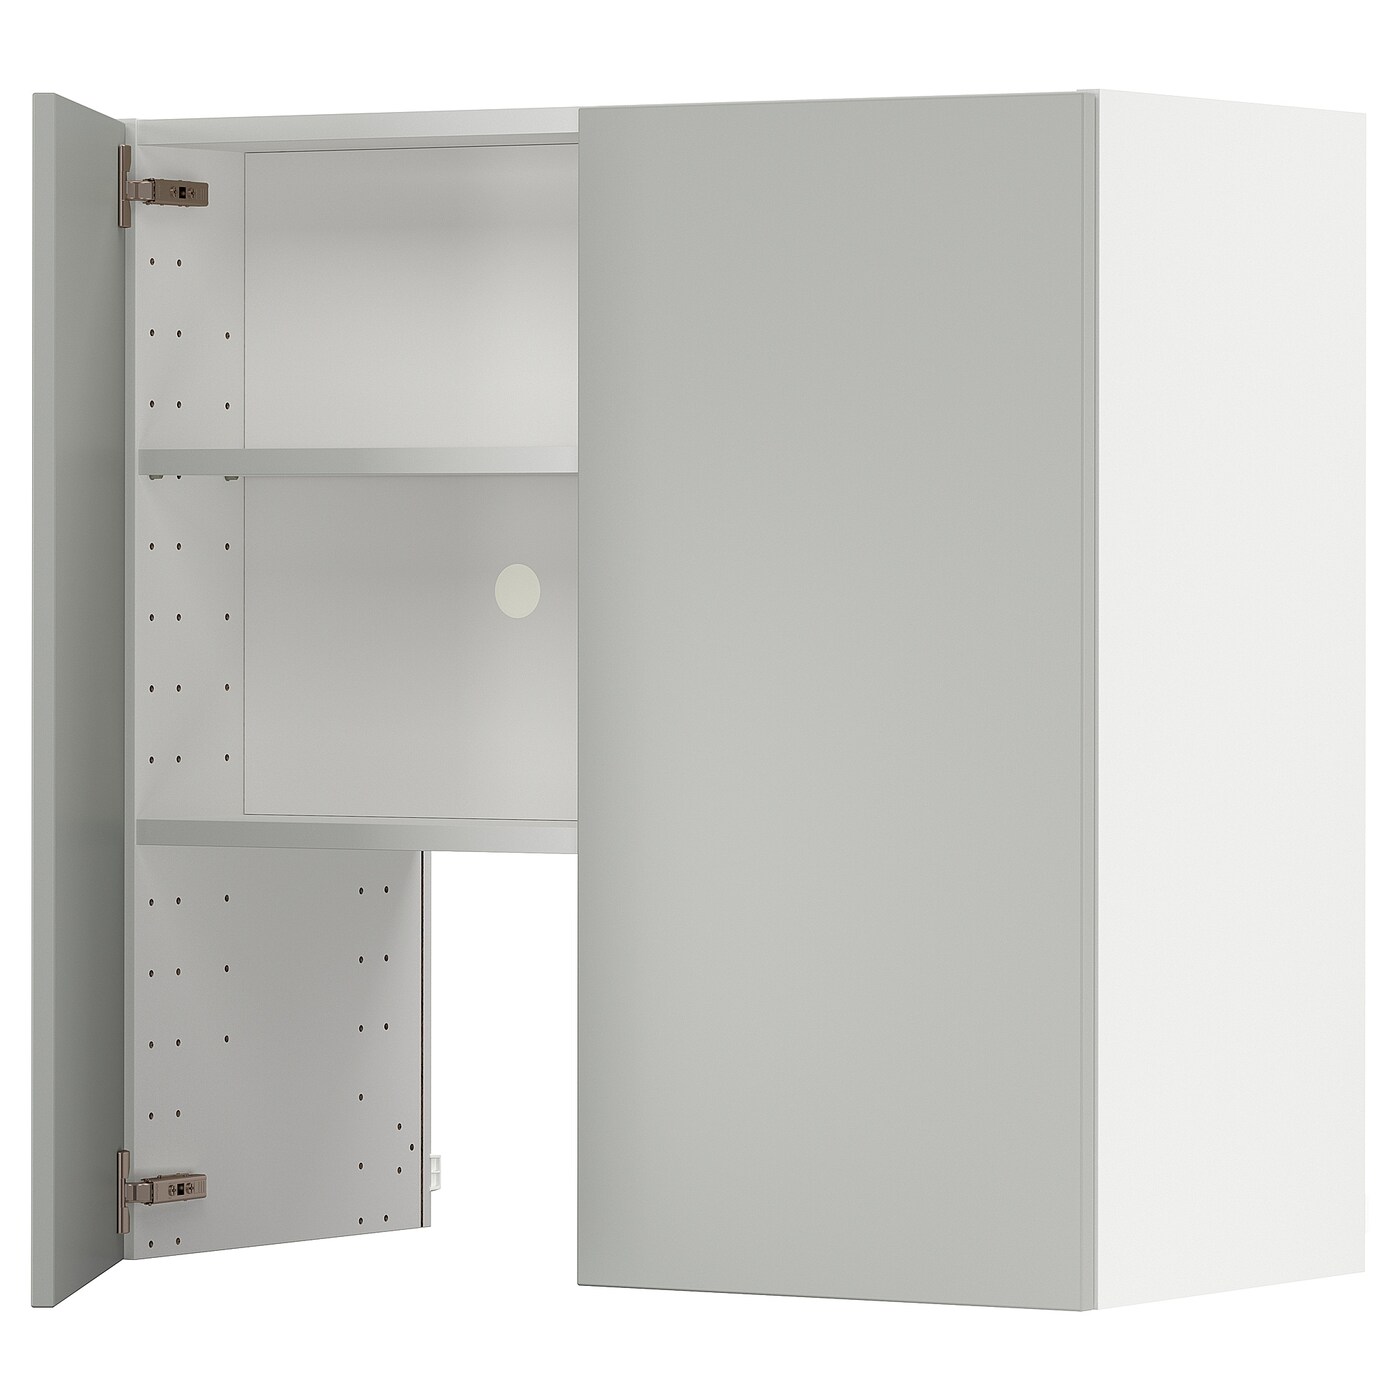 Шкаф - METOD IKEA/ МЕТОД ИКЕА,  80х80 см, белый/серый